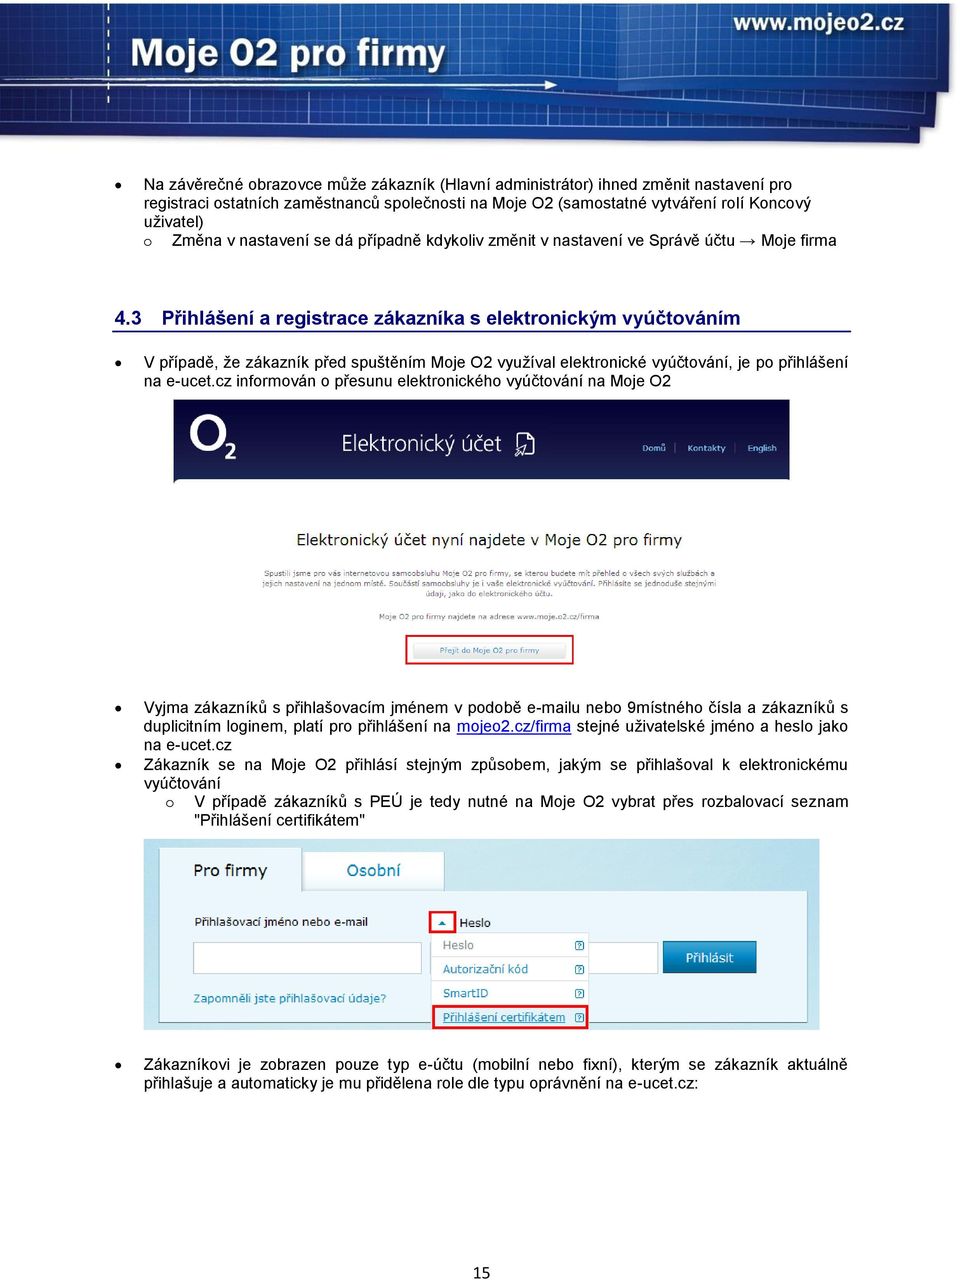 3 Přihlášení a registrace zákazníka s elektronickým vyúčtováním V případě, že zákazník před spuštěním Moje O2 využíval elektronické vyúčtování, je po přihlášení na e-ucet.